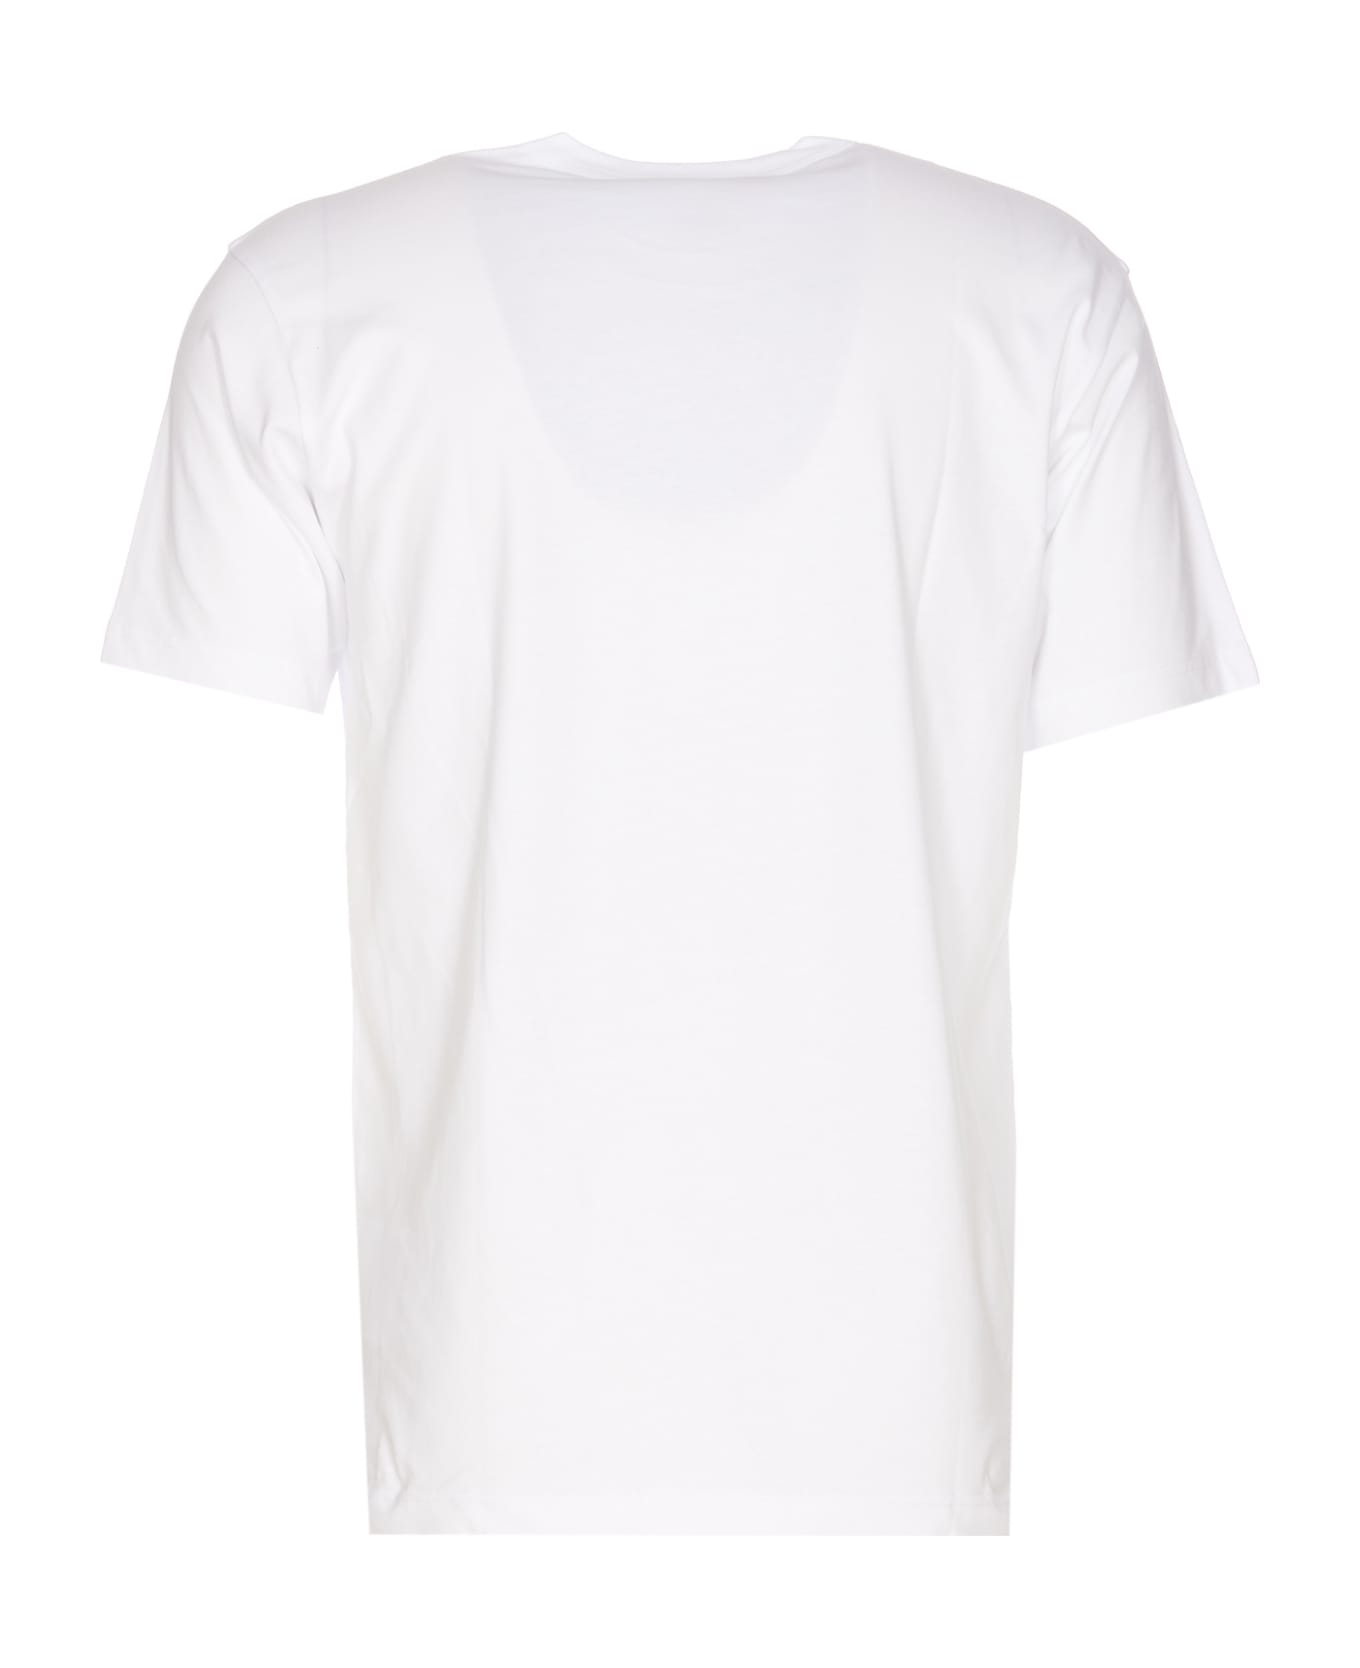 Comme des Garçons Elizabeth Taylor Print T-shirt - White